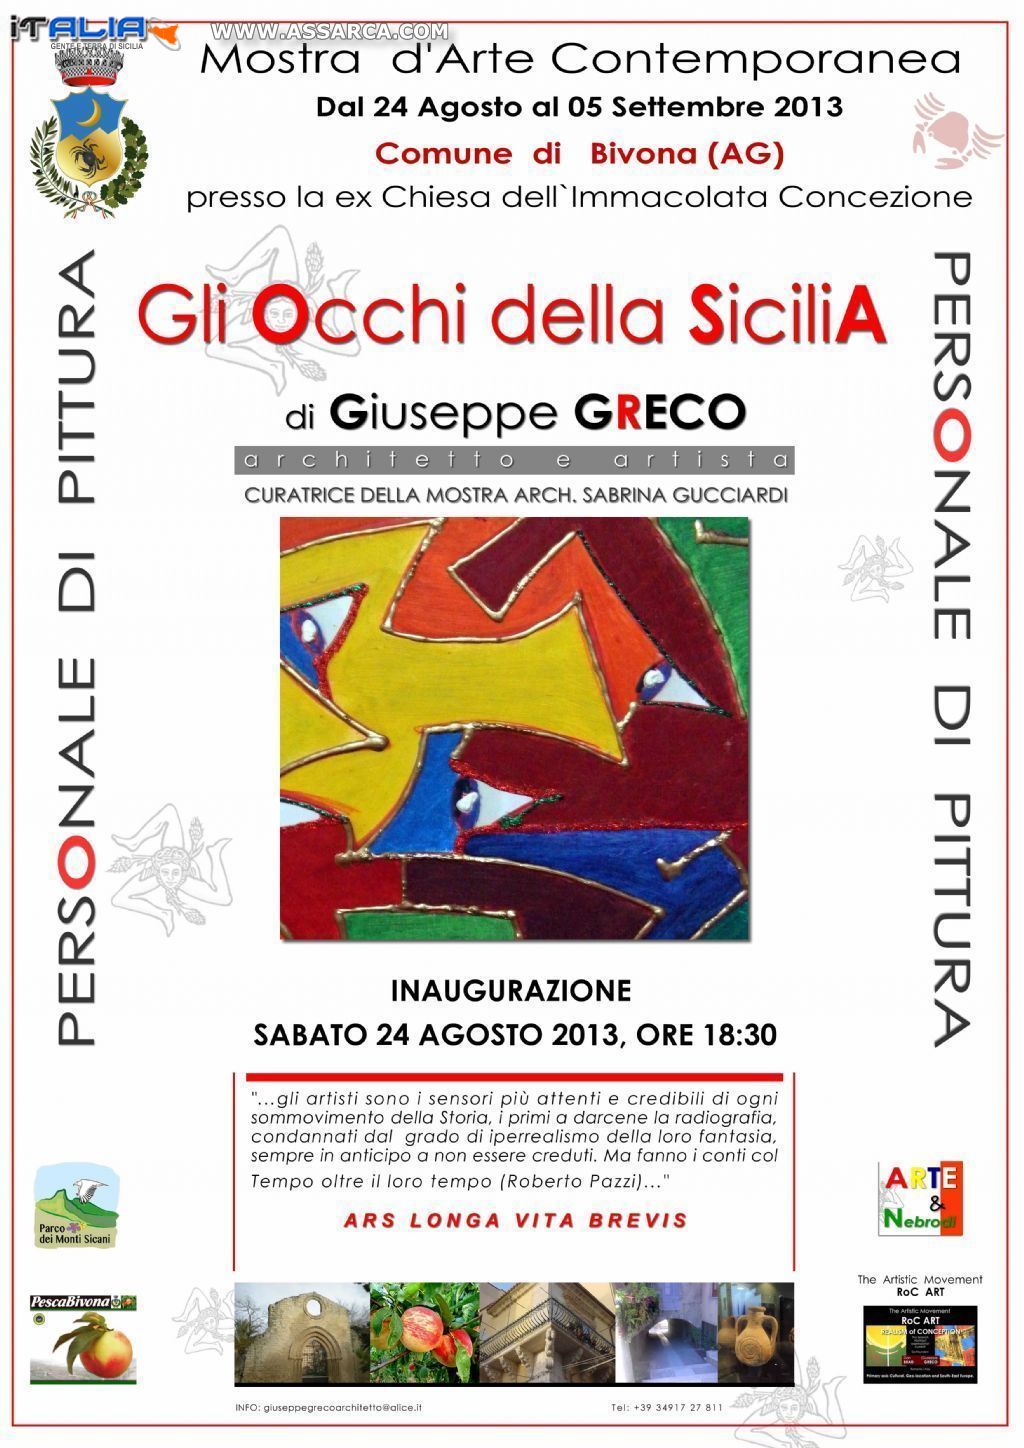 "GLI OCCHI DELLA SICILIA" di Giuseppe Greco